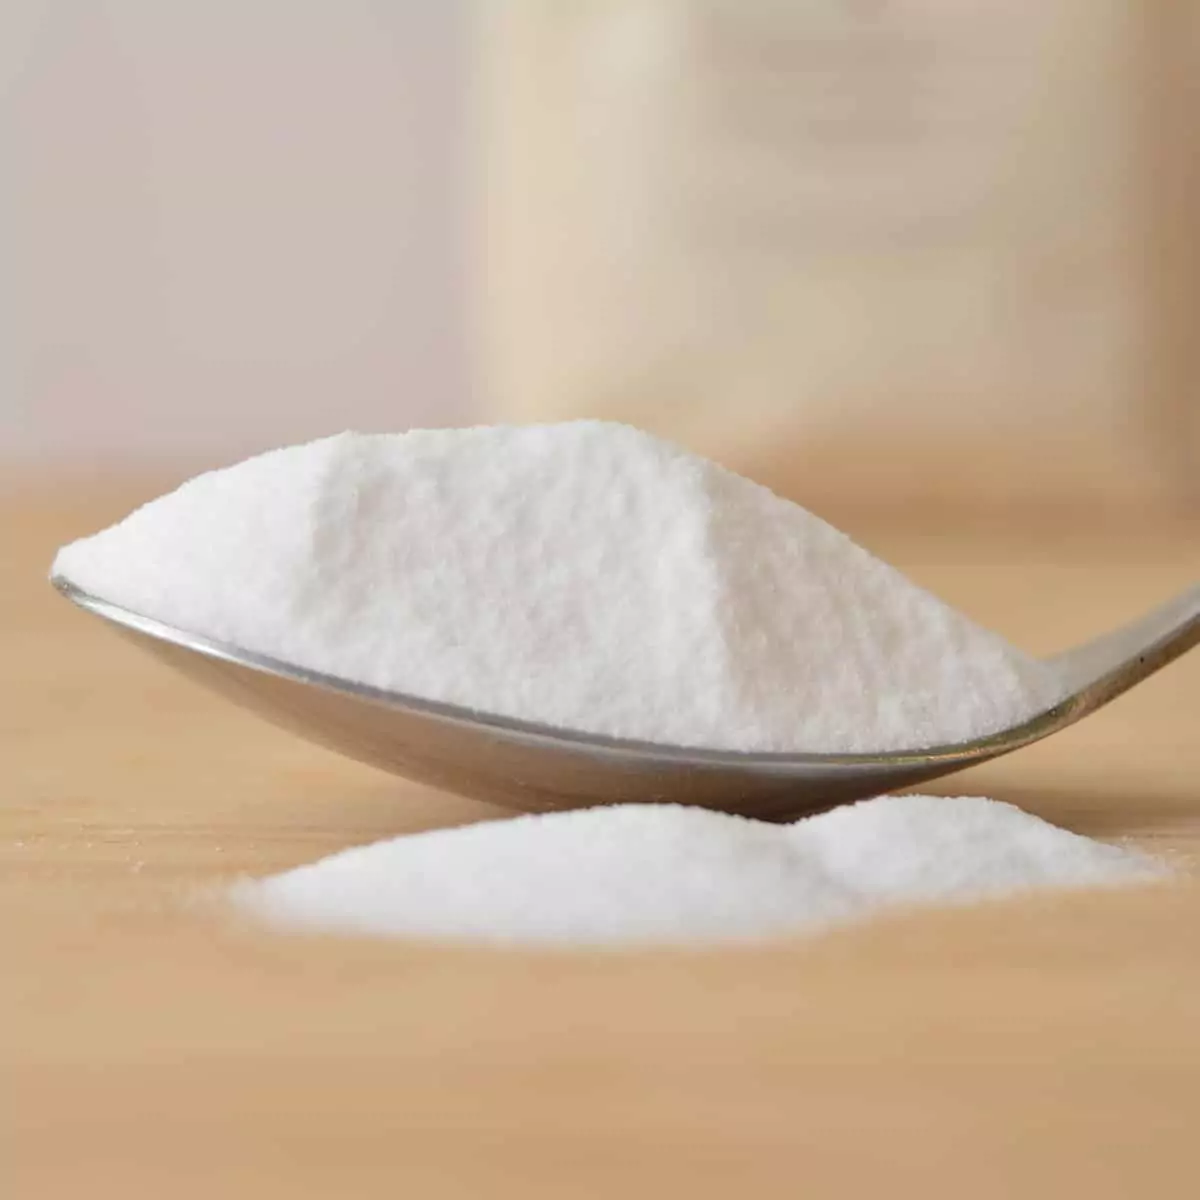 8 usos del bicarbonato de sodio que no conoces: será tu mayor aliado para  la limpieza - La Nueva España